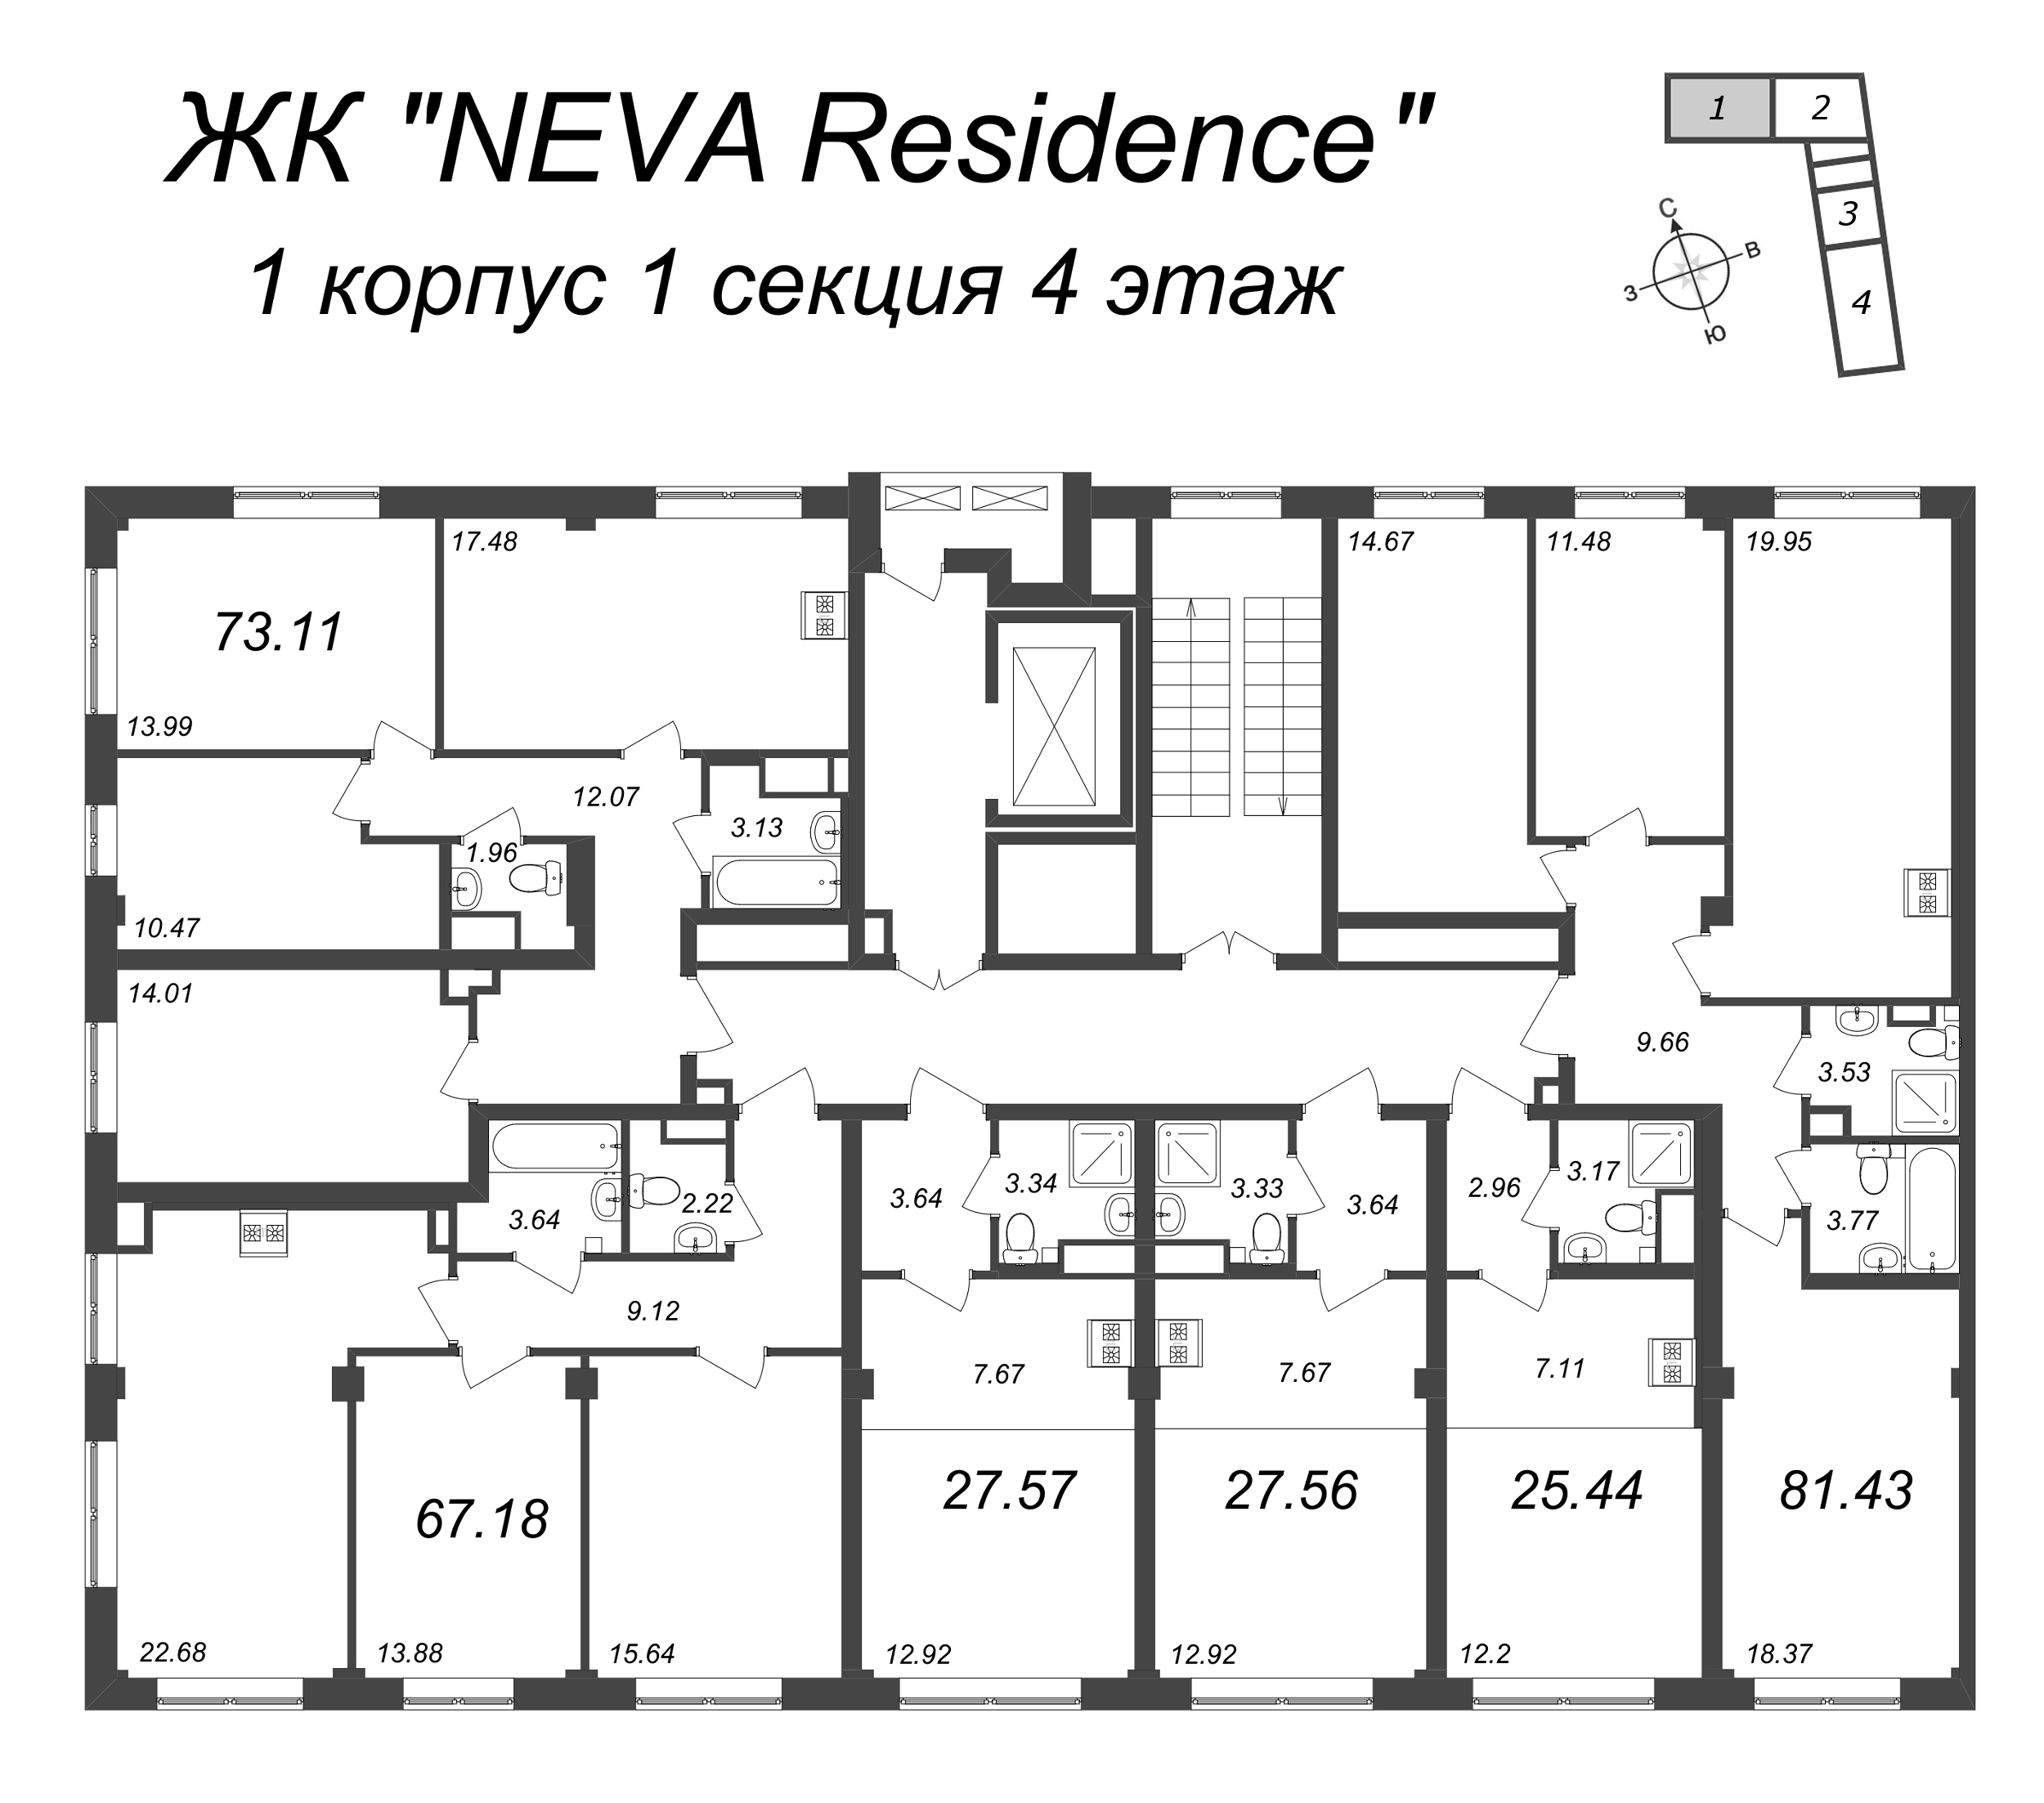 4-комнатная (Евро) квартира, 73.11 м² в ЖК "Neva Residence" - планировка этажа